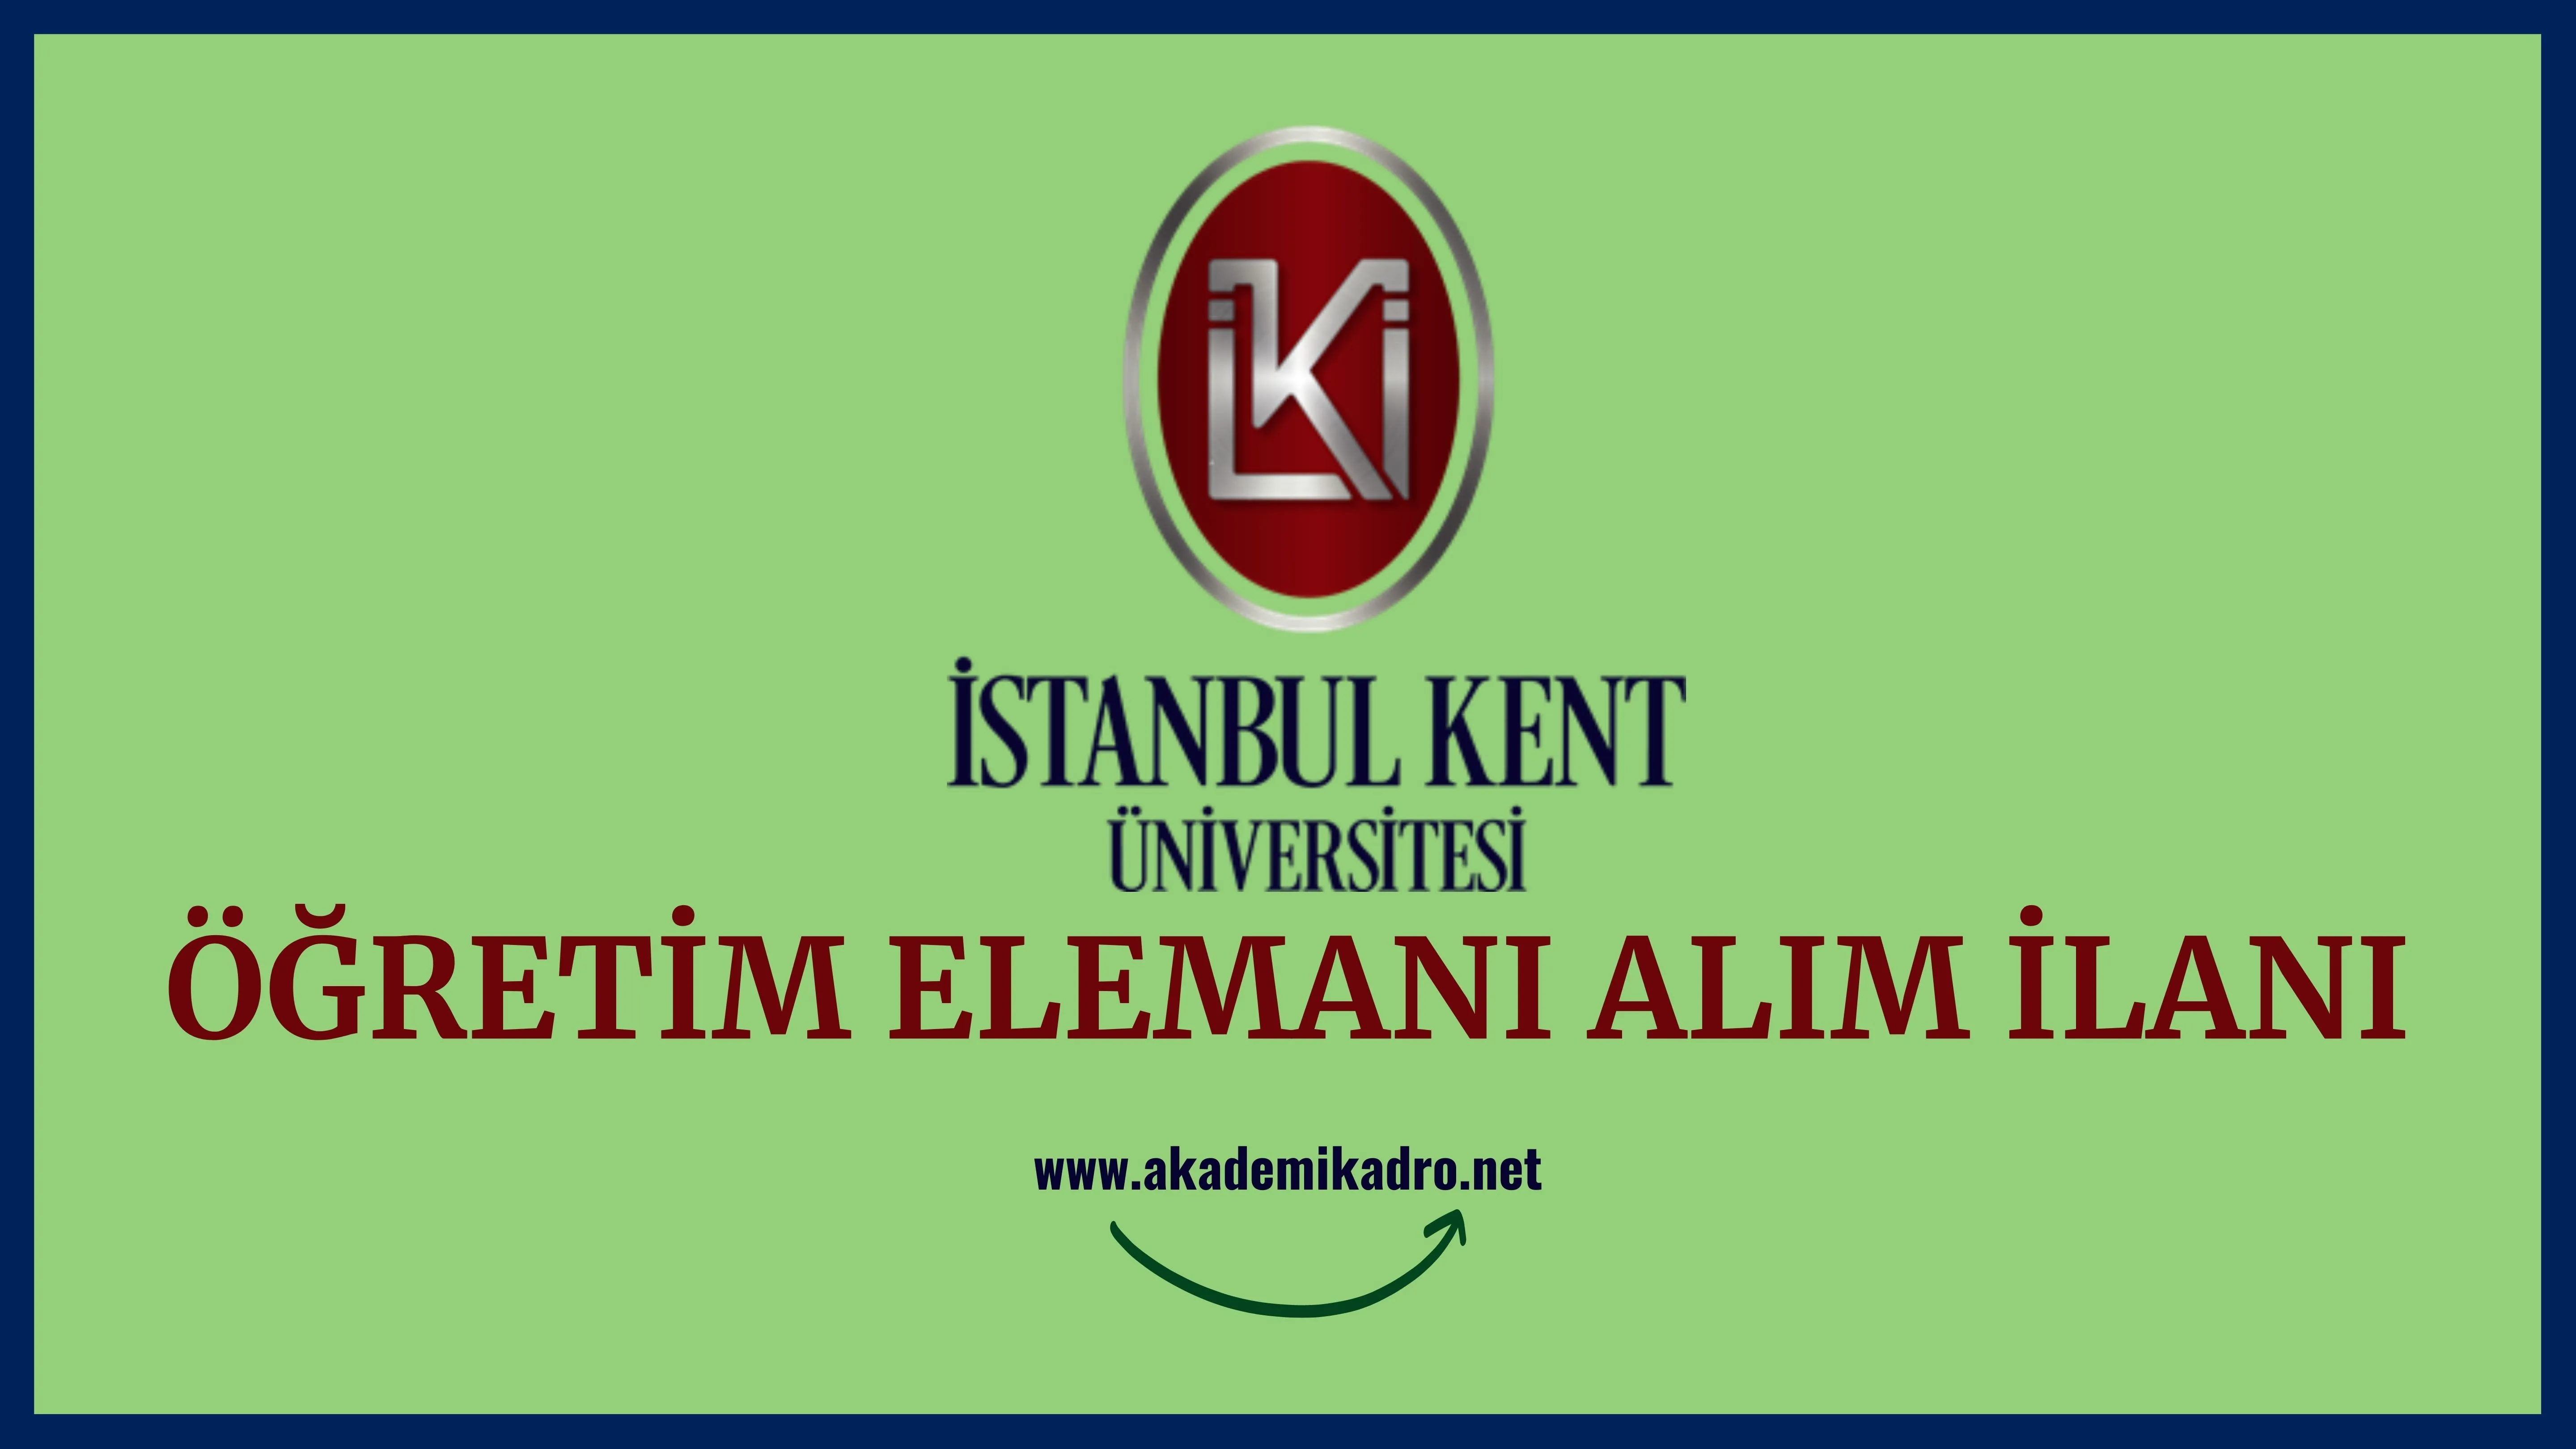 İstanbul Kent Üniversitesi 14 Araştırma görevlisi, 22 Öğretim Görevlisi ve 99 öğretim üyesi alacaktır.